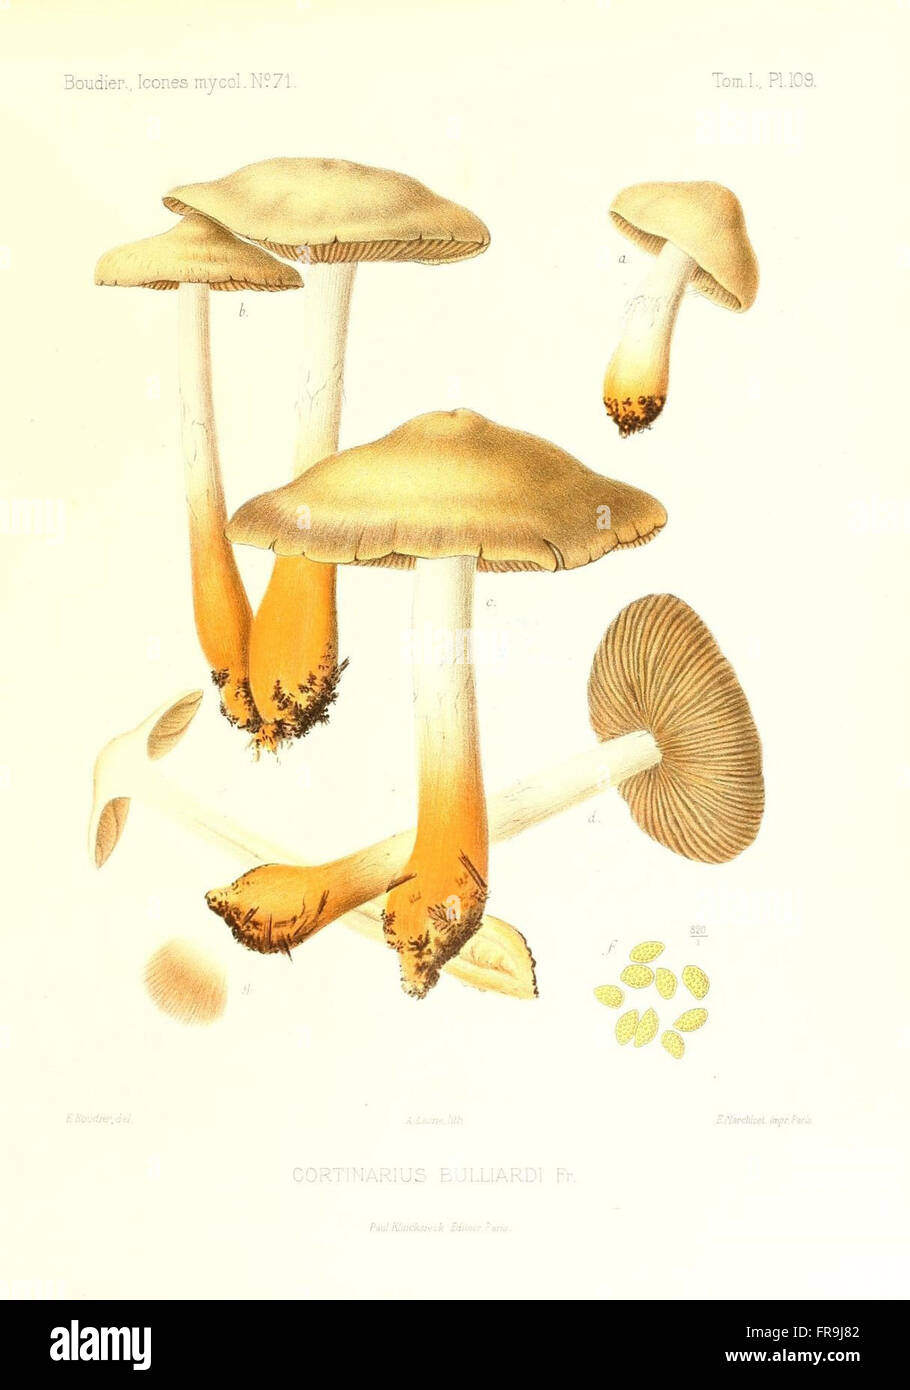 Icones mycologicC3A6, ou Iconographie des champignons de France principalement Discomycetes (Pl. 109) Stock Photo